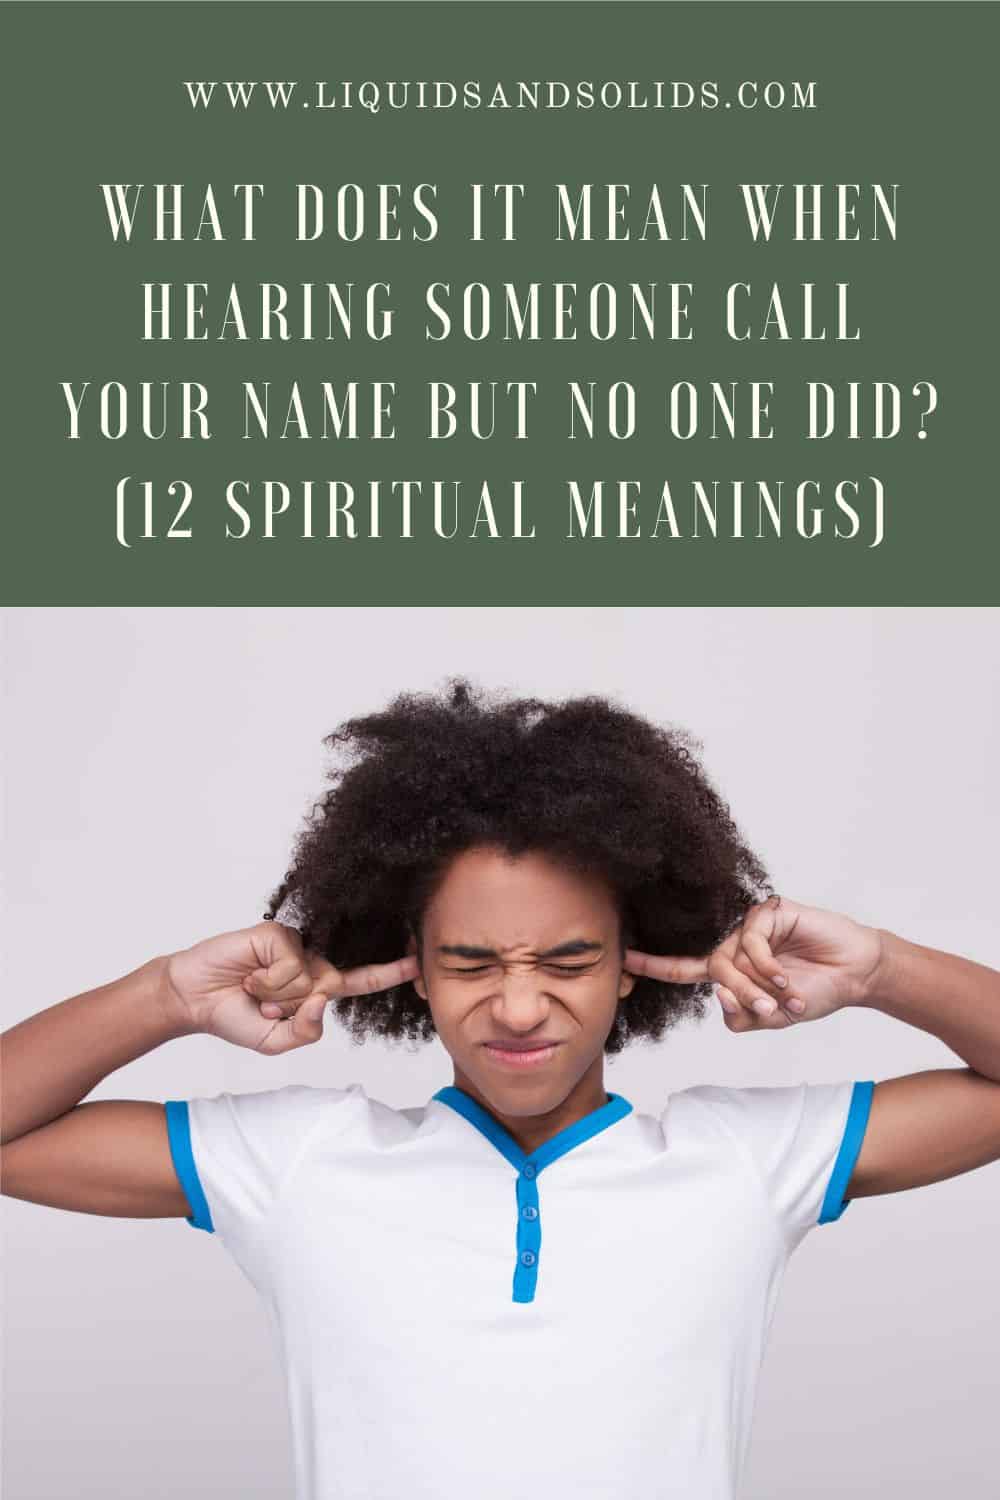  Que signifie le fait d'entendre quelqu'un appeler son nom mais que personne ne l'a fait (12 significations spirituelles) ?